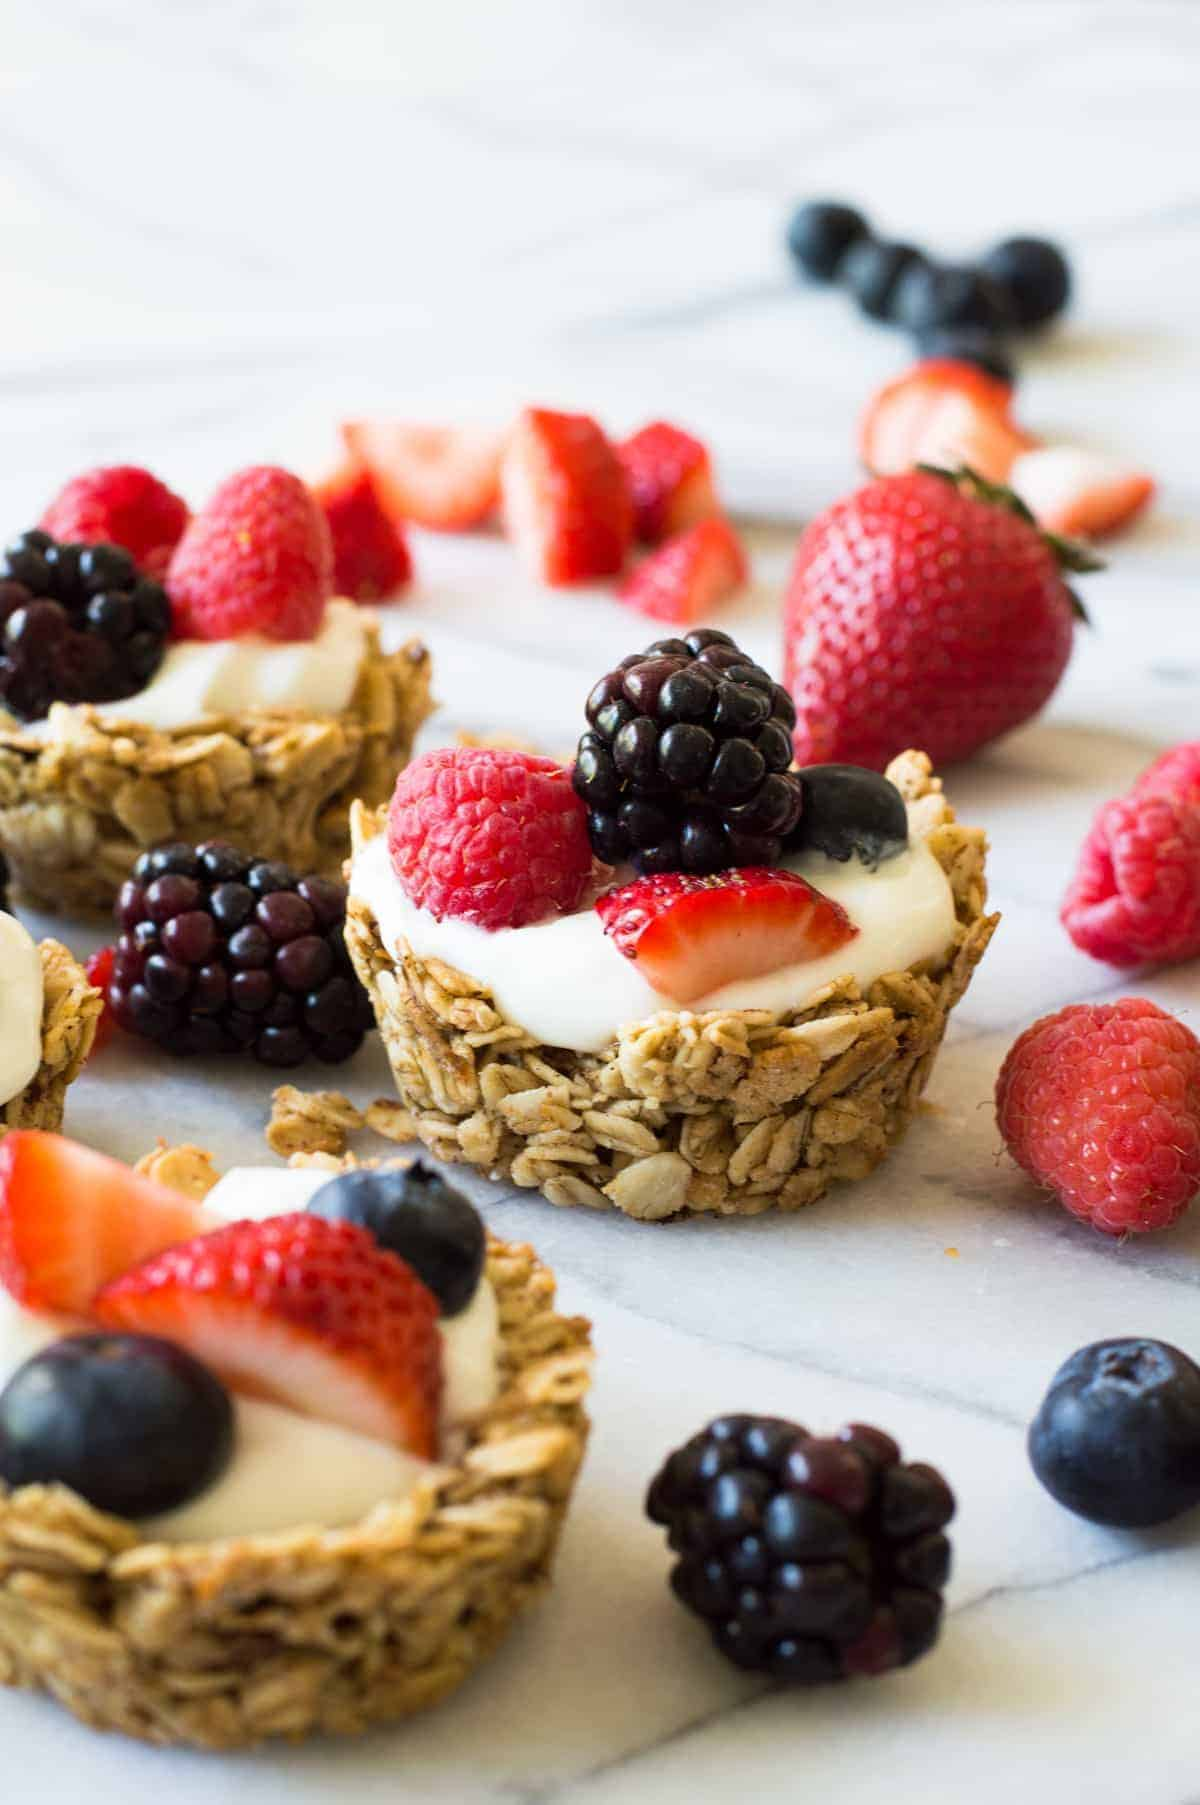 Estes copos de Granola de Frutas e Iogurte são super fáceis de fazer para o pequeno-almoço! Encha com o seu iogurte favorito e frutas frescas para uma refeição completa e saudável!